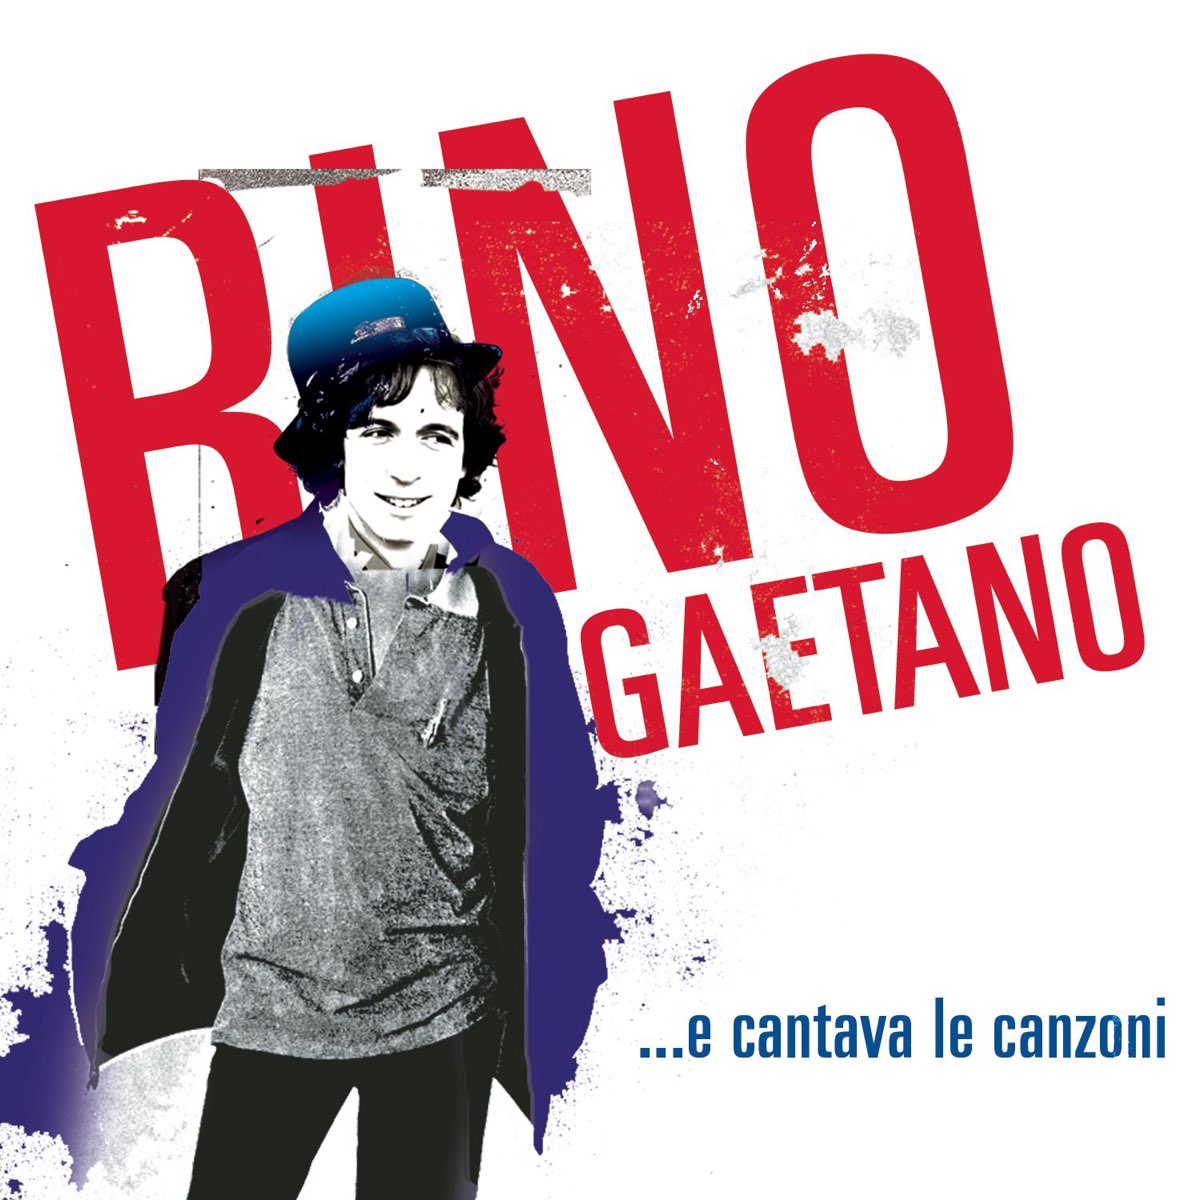 e cantava le canzoni - Album di Rino Gaetano - Apple Music